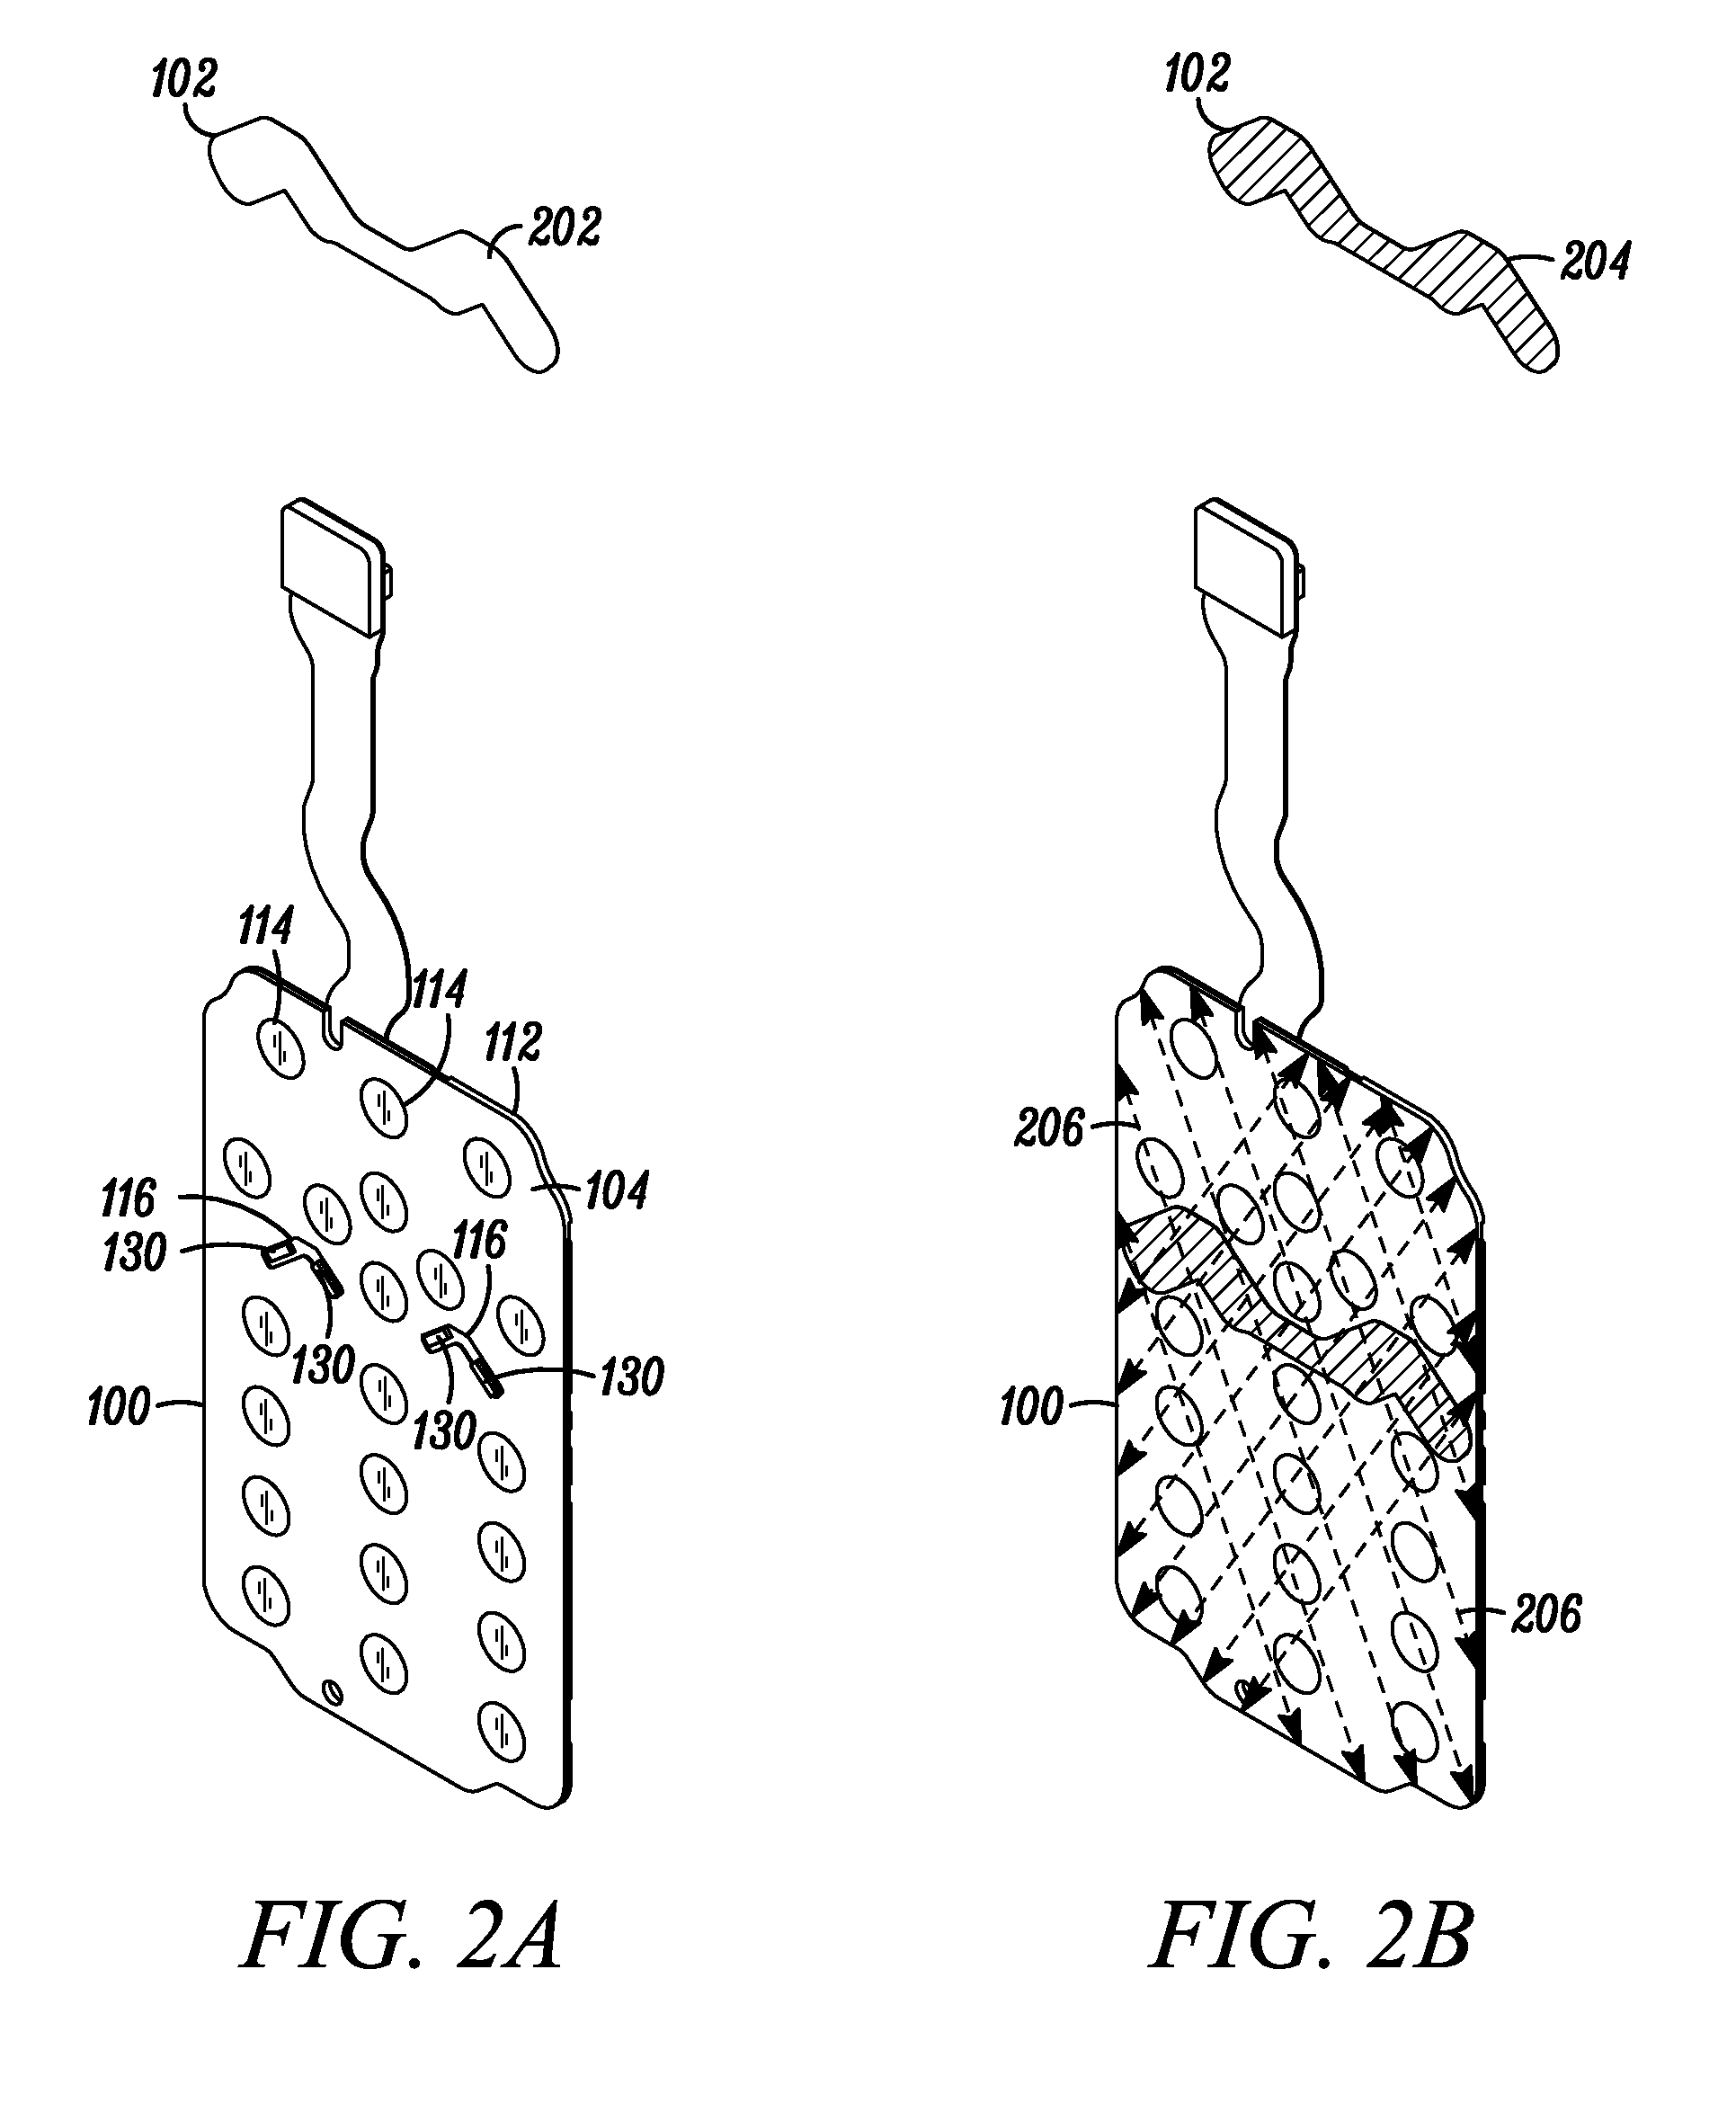 Keypad assembly for a communication device